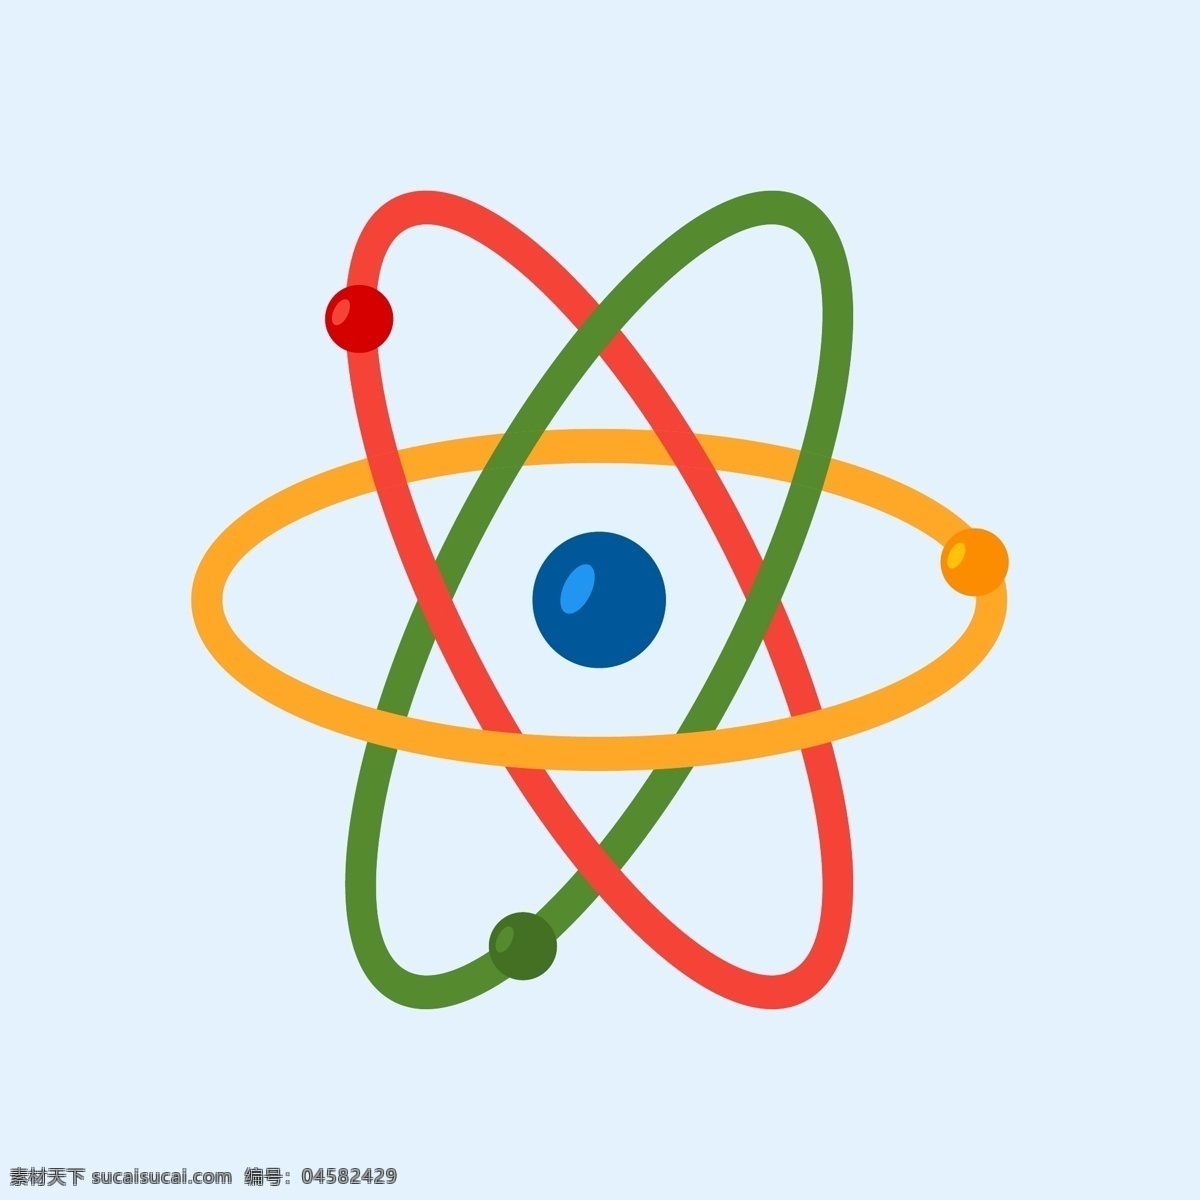 平面设计 中 彩色 原子 平面 科学 能源 丰富多彩 化学 插图 分子 物理 核 有色 分离 电子 质子 中子 白色